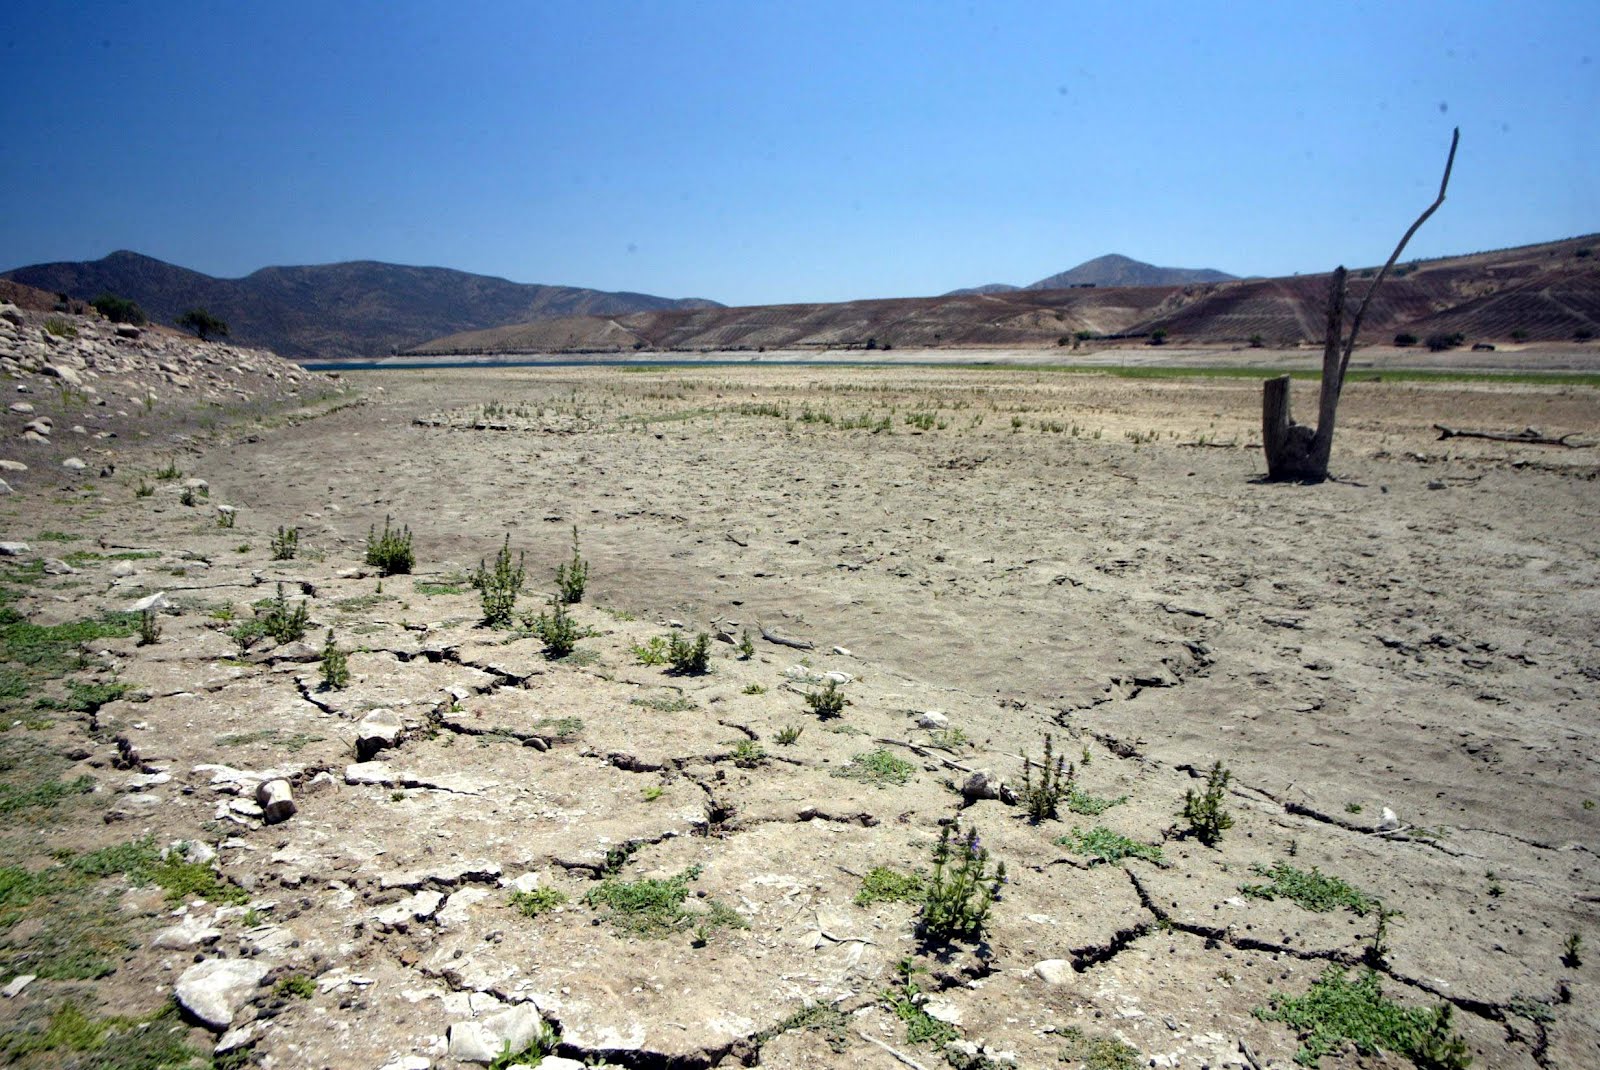 Avanza la desertificación en Chile: Un 22% del territorio nacional y casi 7 millones de personas están afectados